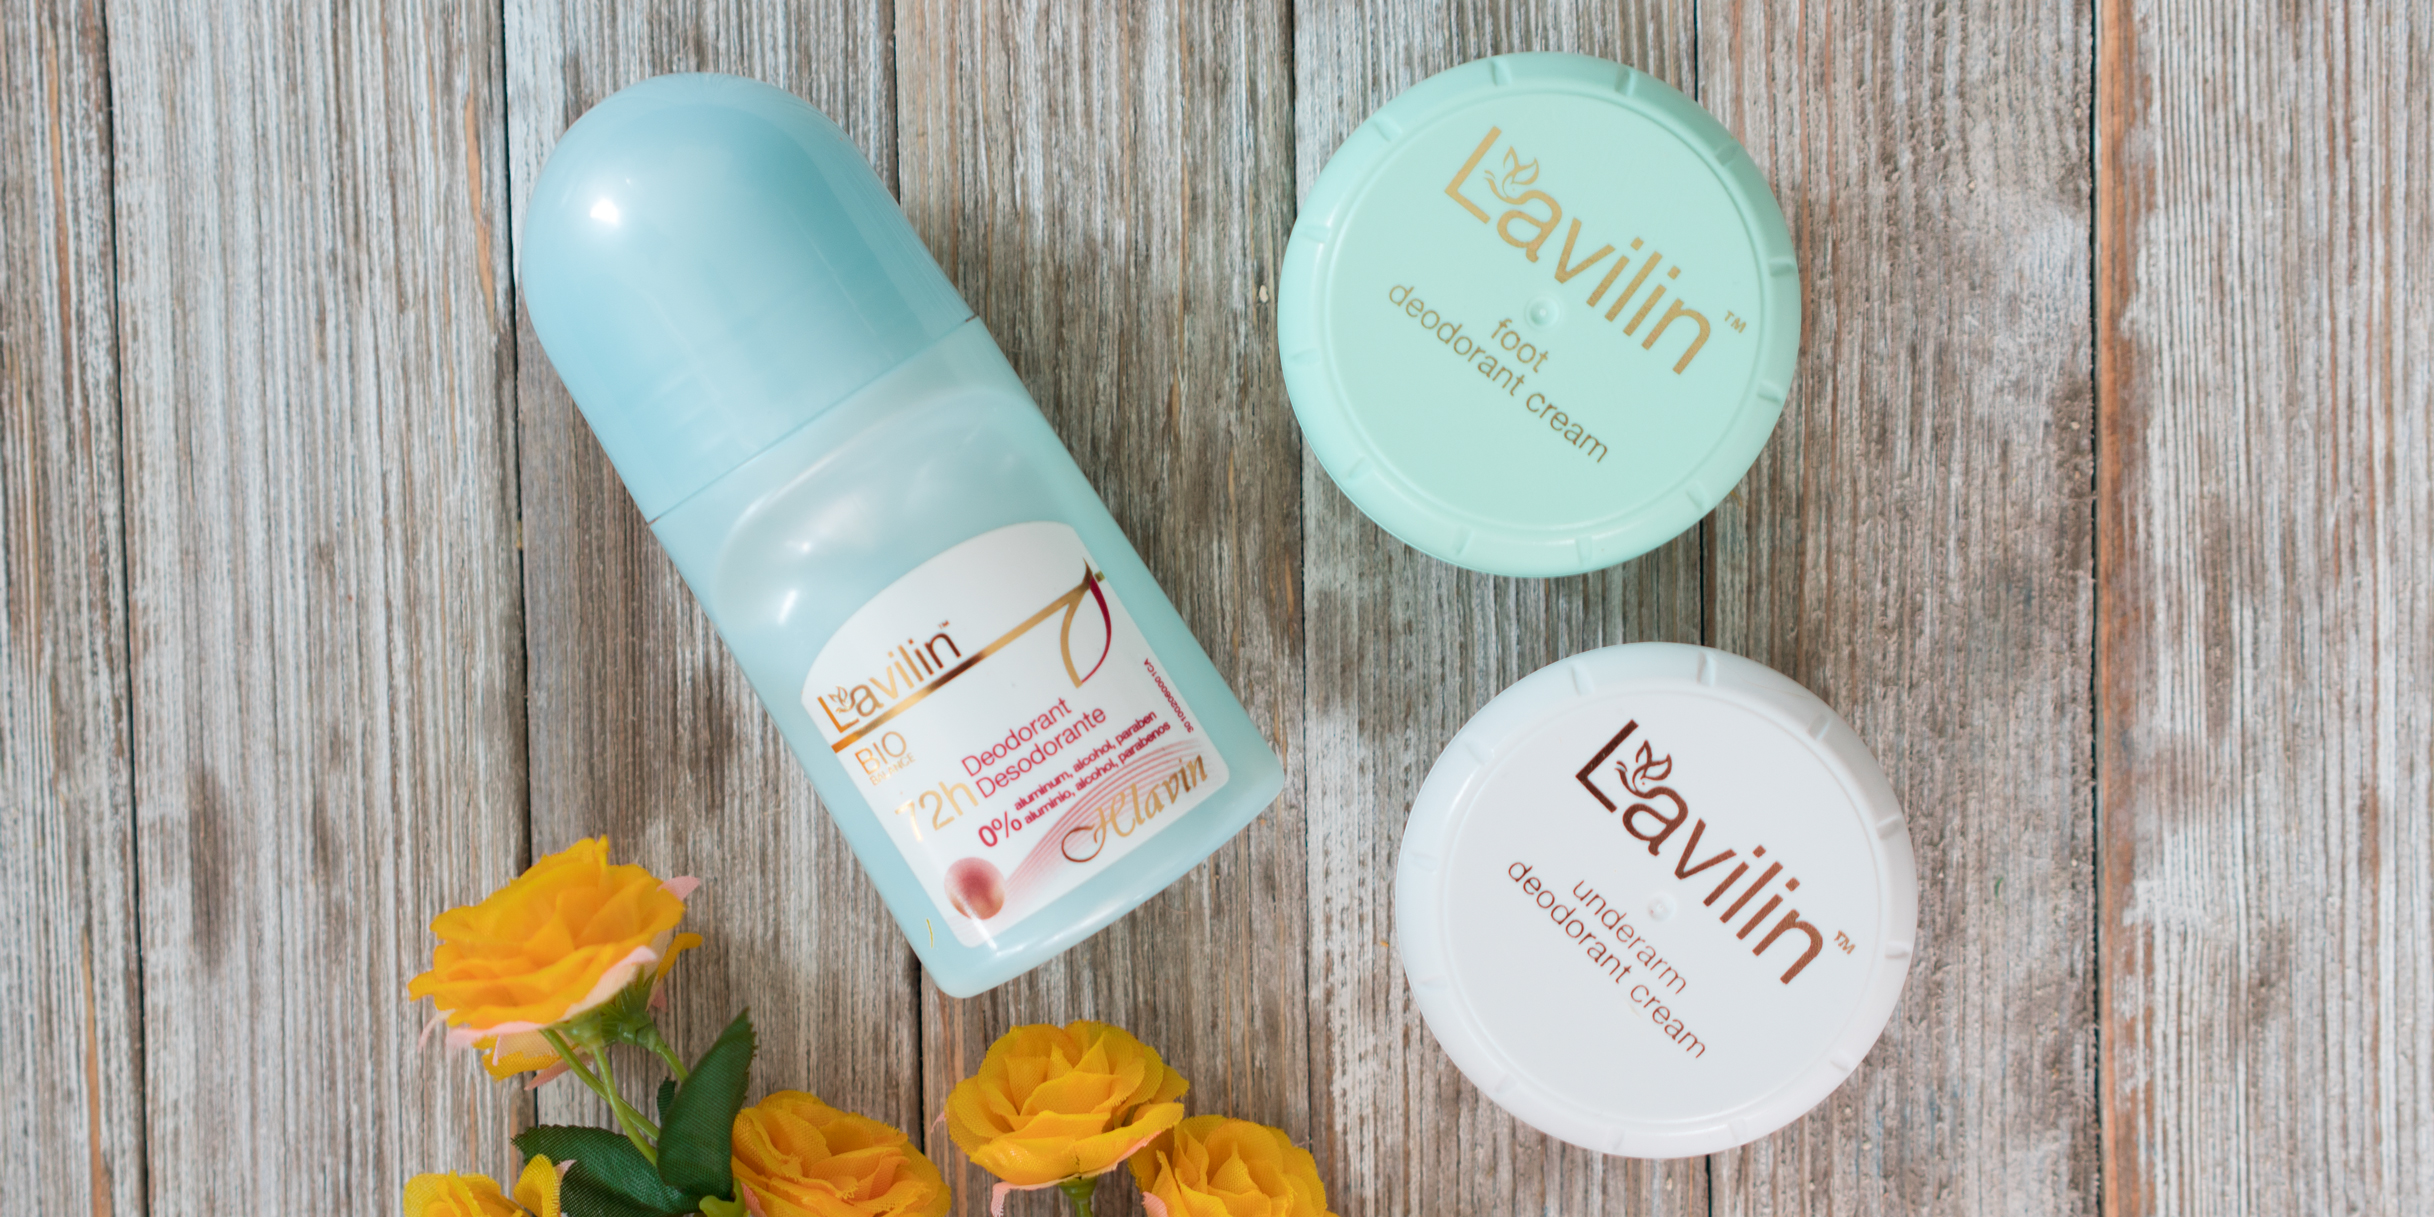 Free Sample of Lavilin Aluminum-Free Deodorant Cream!